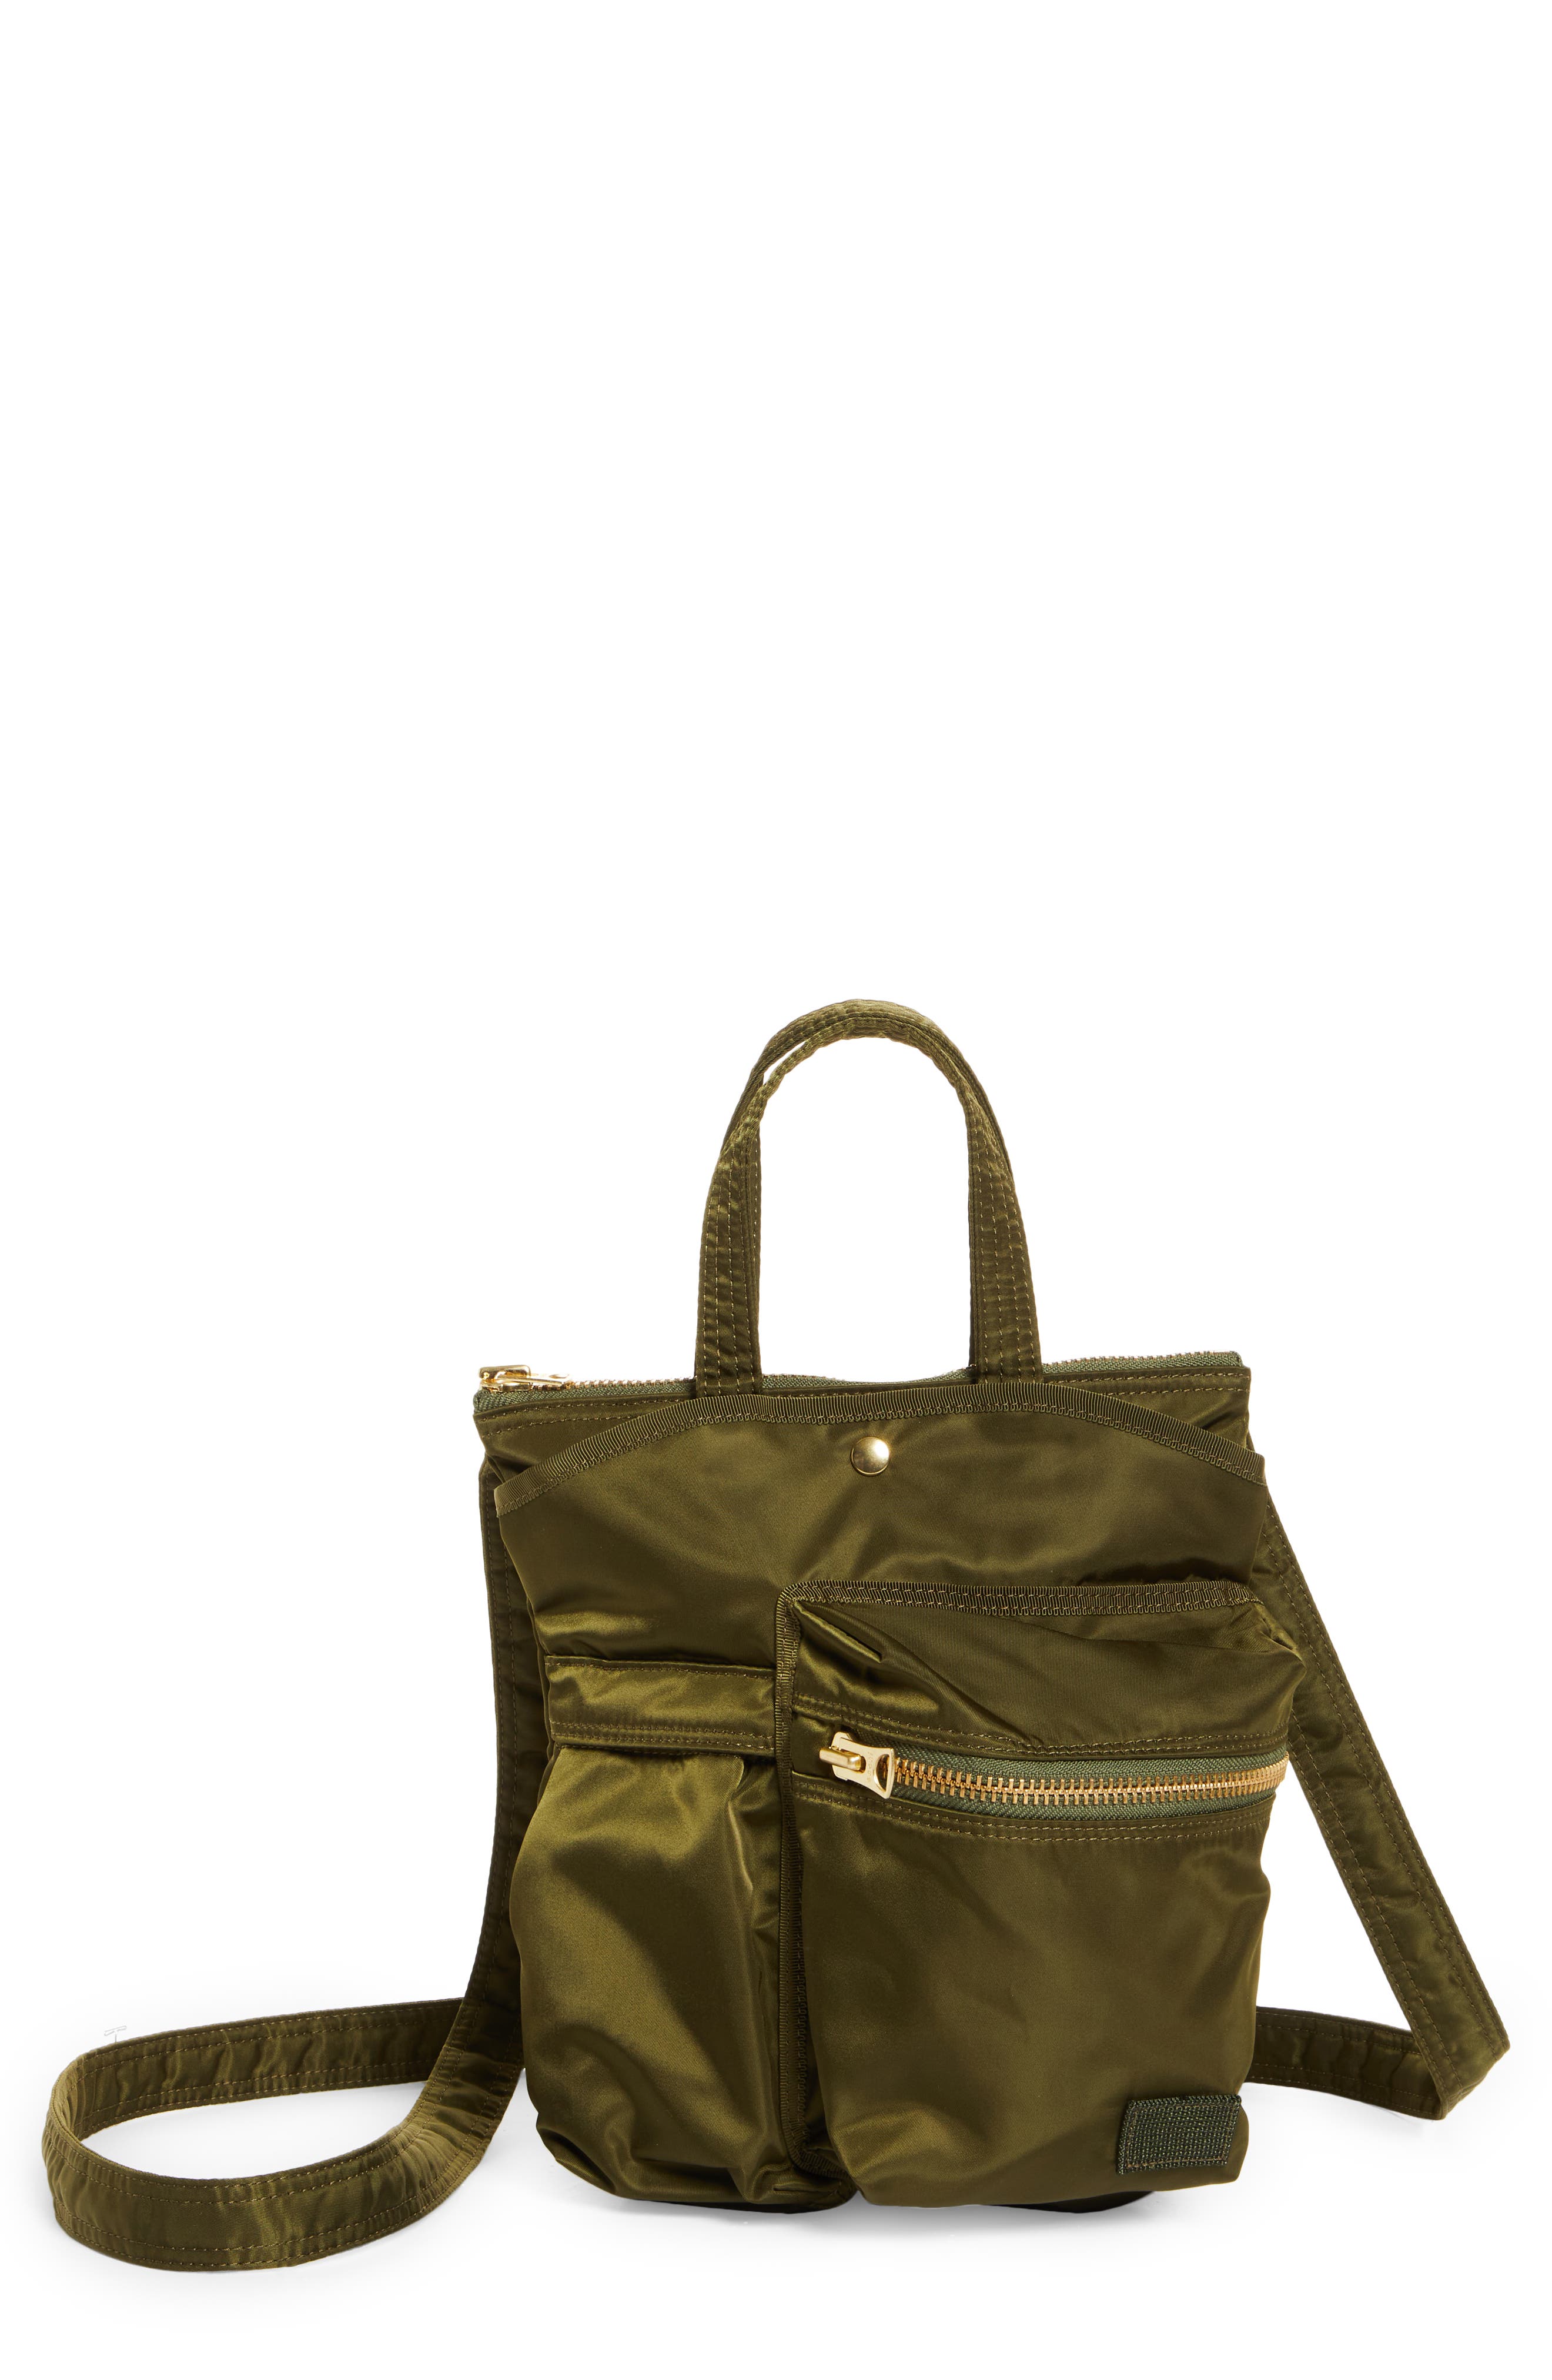 Sacai x Porter Pocket Bag in Khaki at Nordstrom